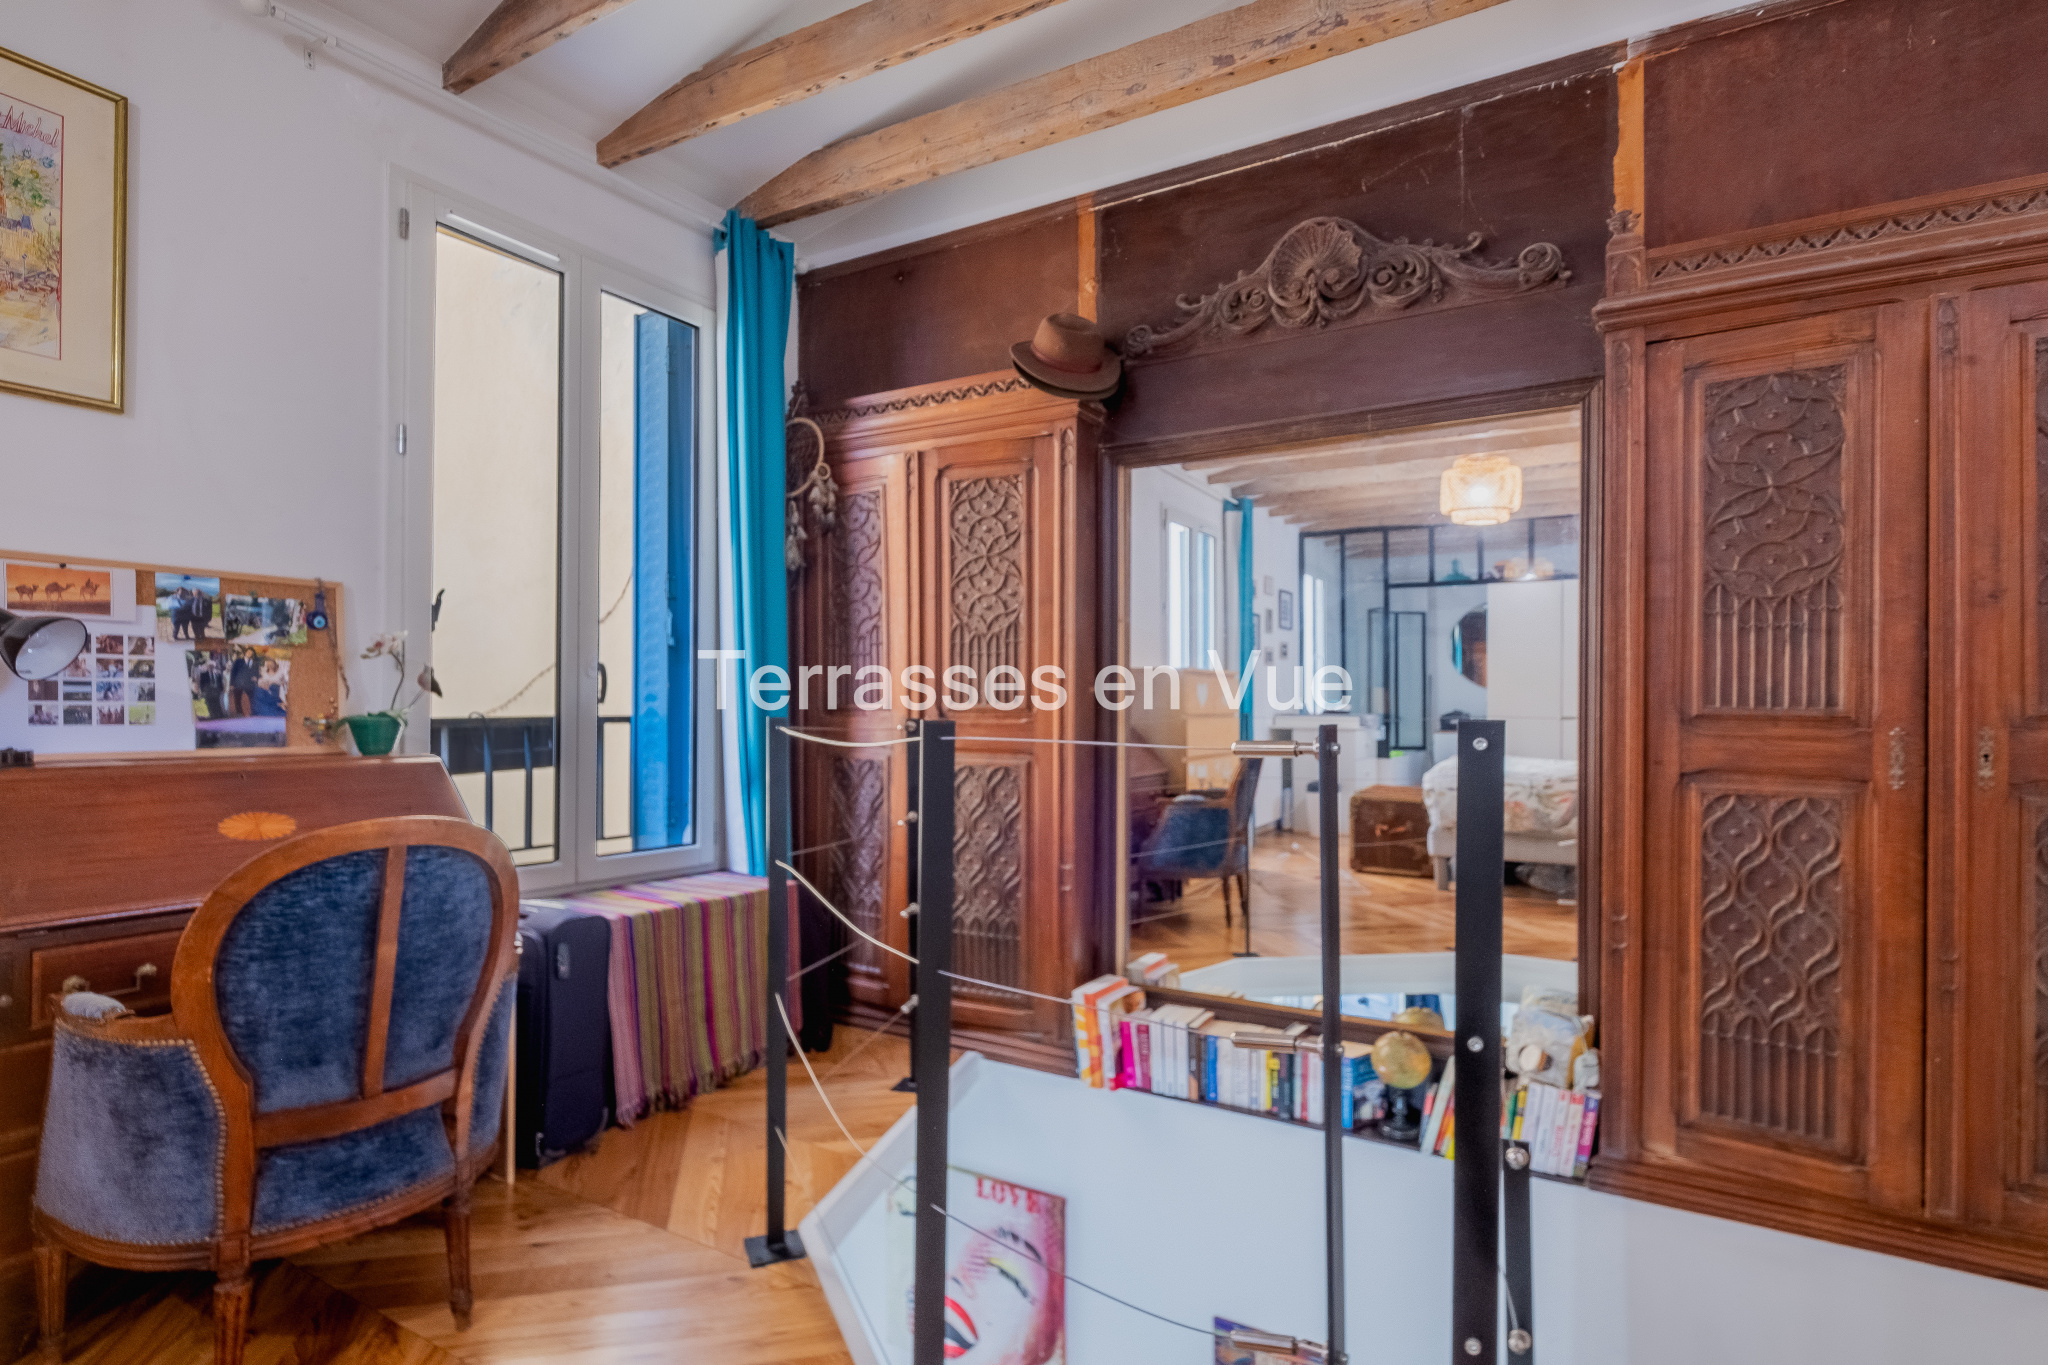 House for sale - Paris / 75018